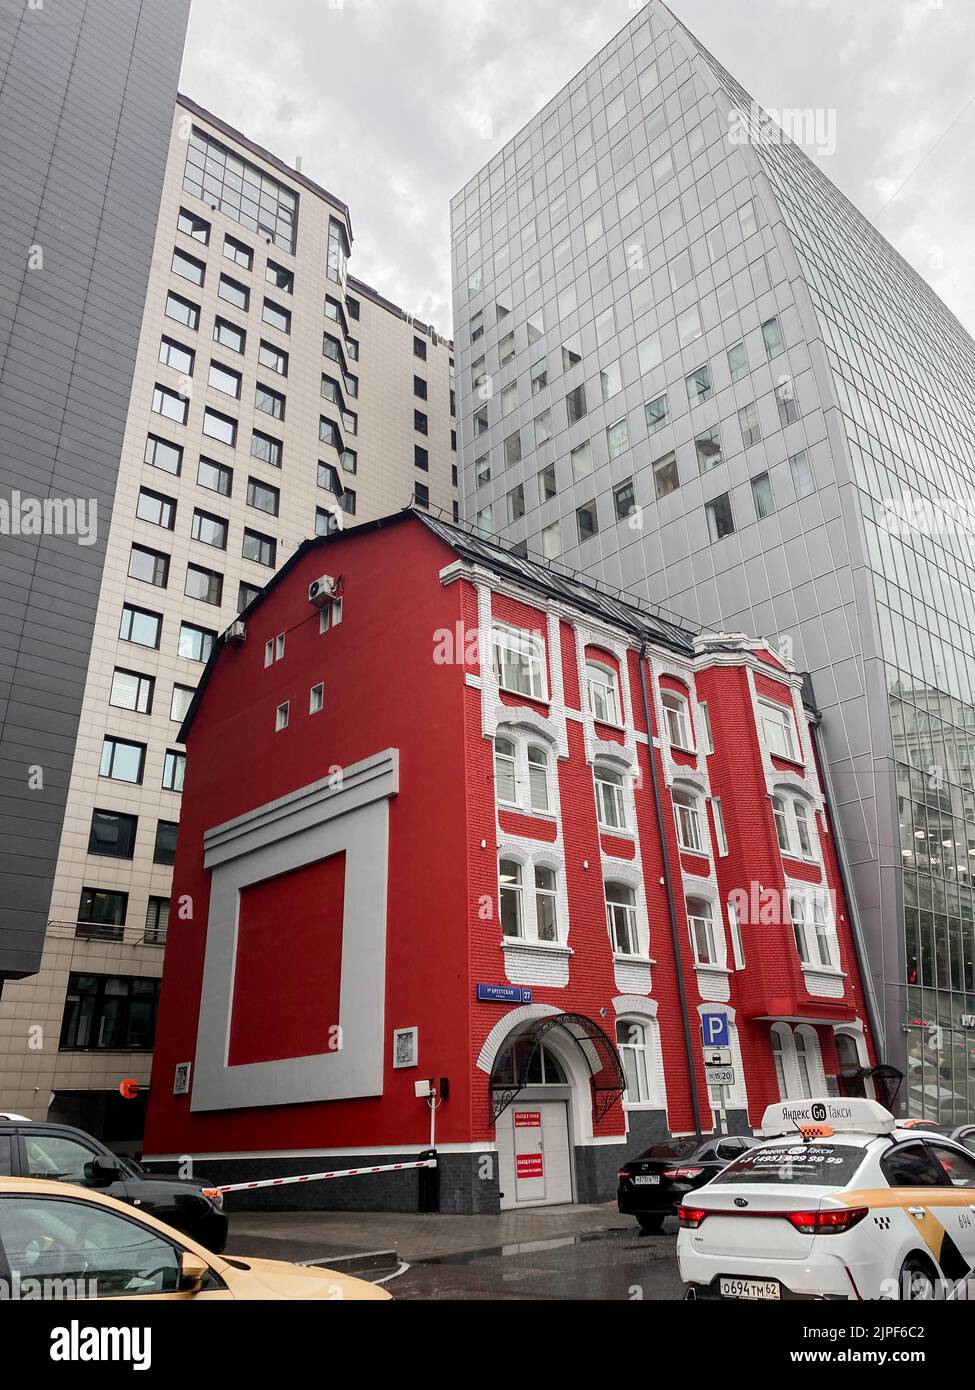 Mosca, Russia, 2021 agosto: Una vecchia casa di mattoni rossi si trova tra enormi grattacieli di vetro grigio. Mix storico e moderno, nuovo e vecchio. Insieme Foto Stock